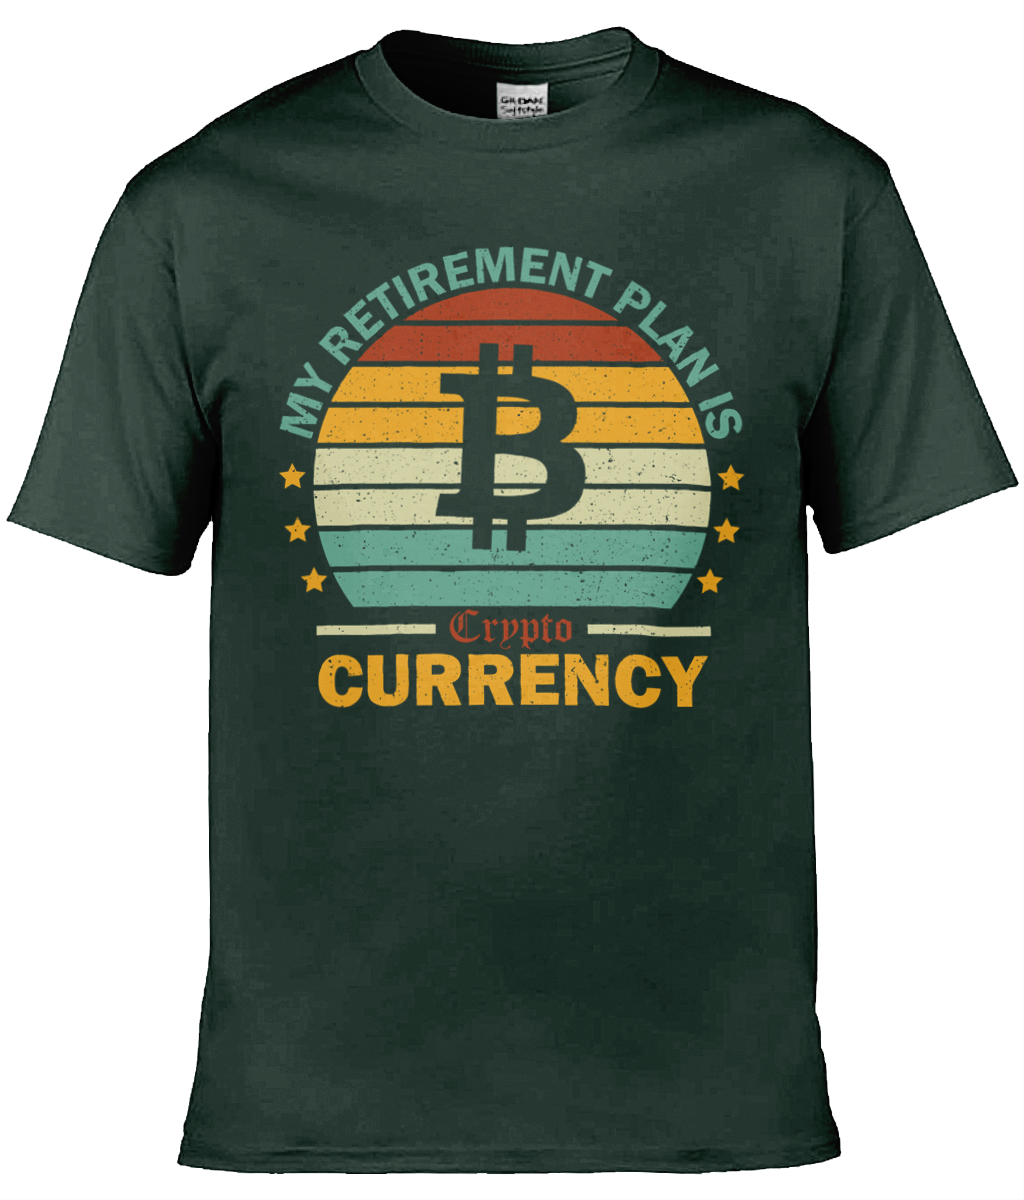 My Retirement Plan Bitcoin T-shirt, Unisex T-shirt